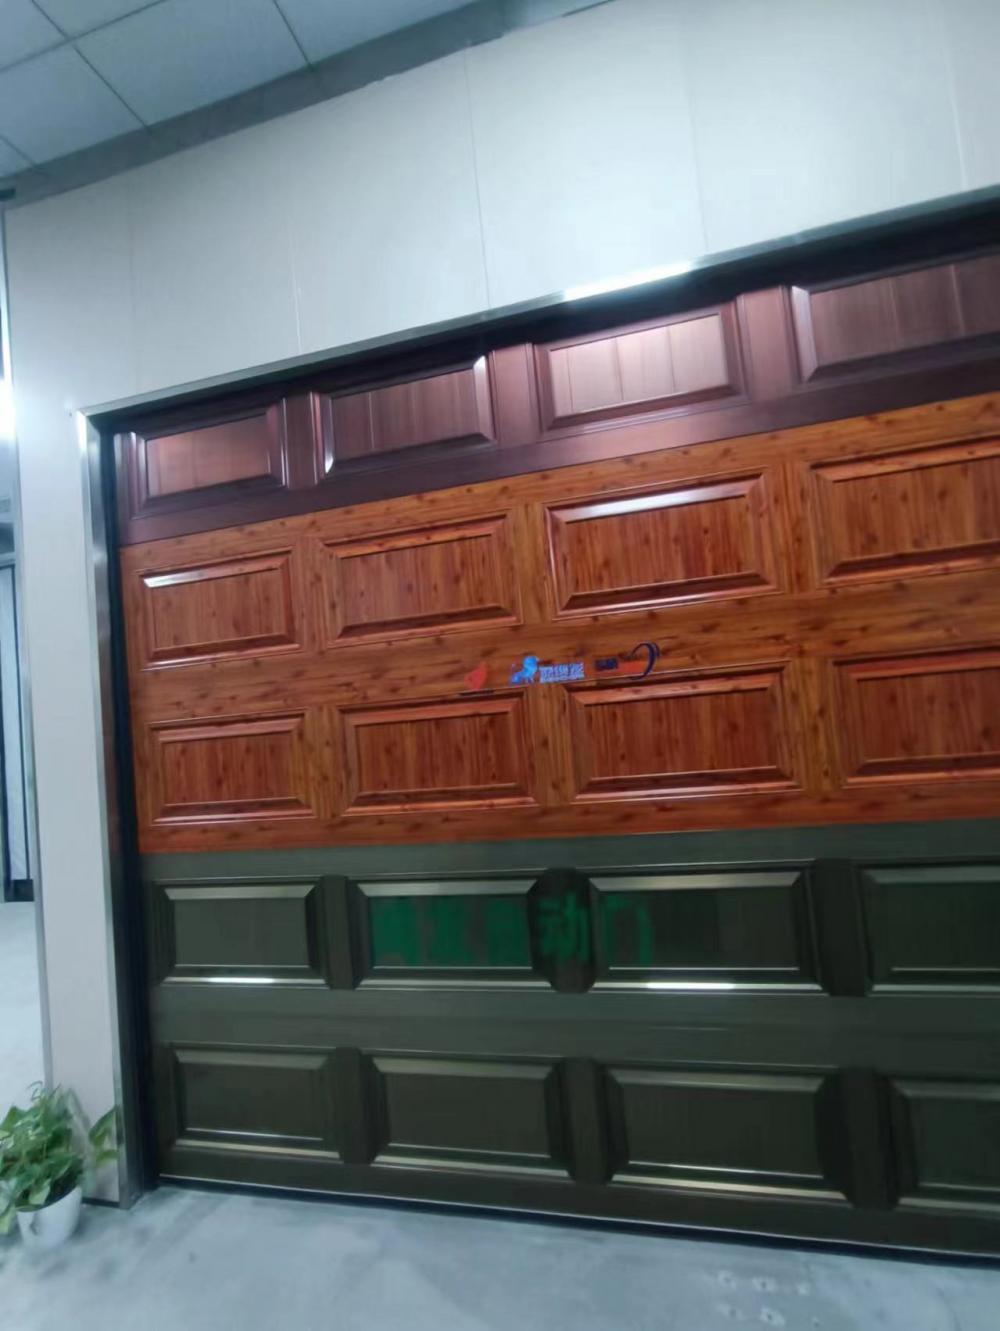 Anti-theft alarm function garage door